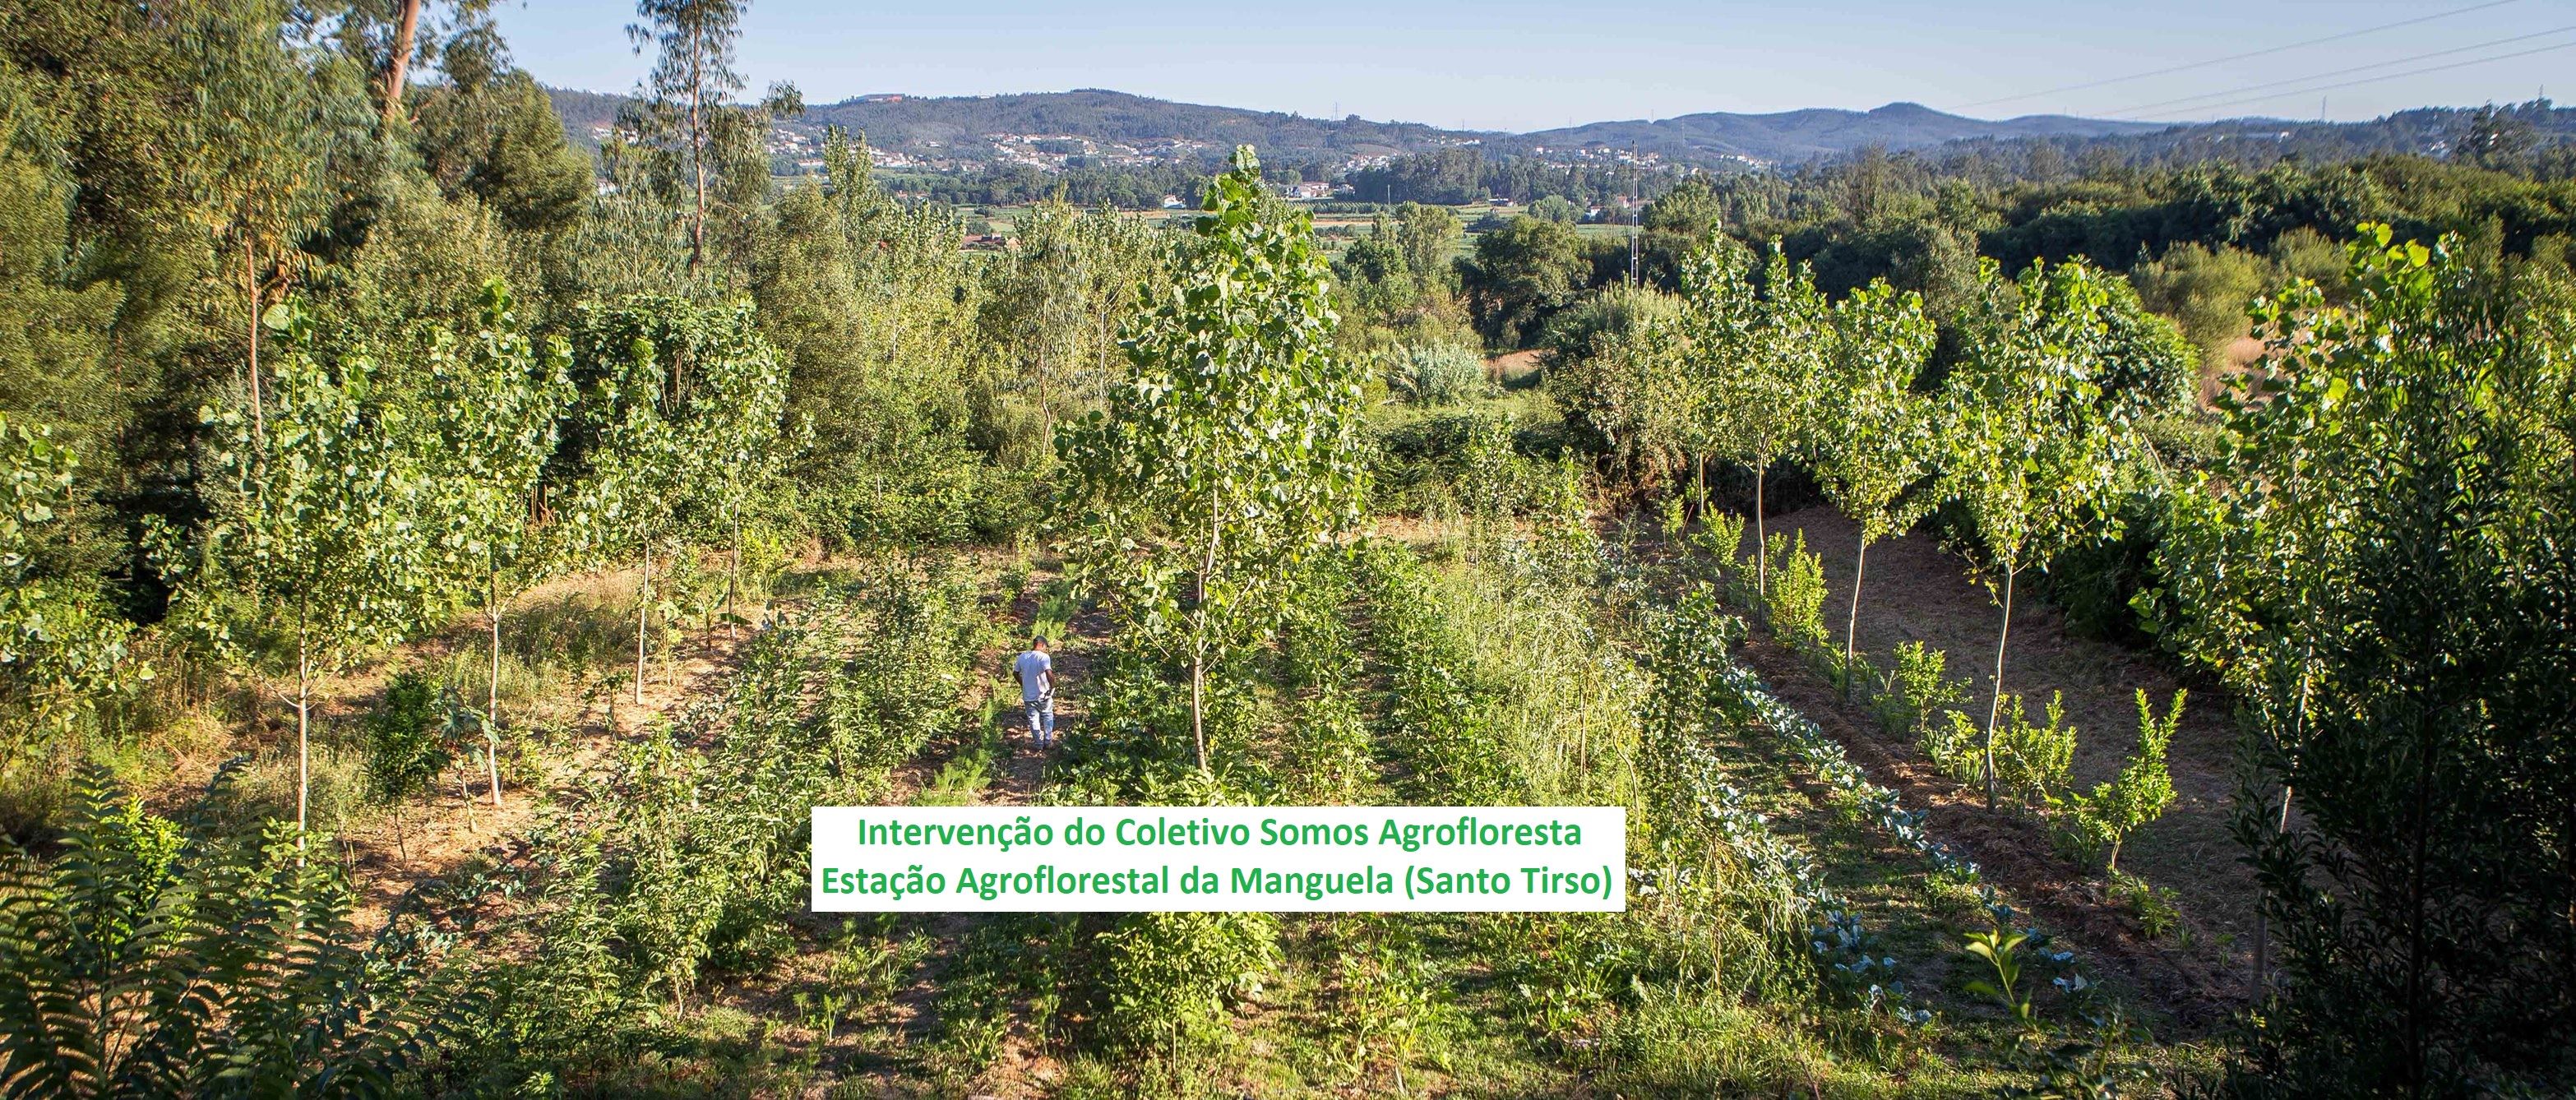 Agrofloresta Sintrópica na Regeneração dos Ecosistemas-Apresentação e Debate